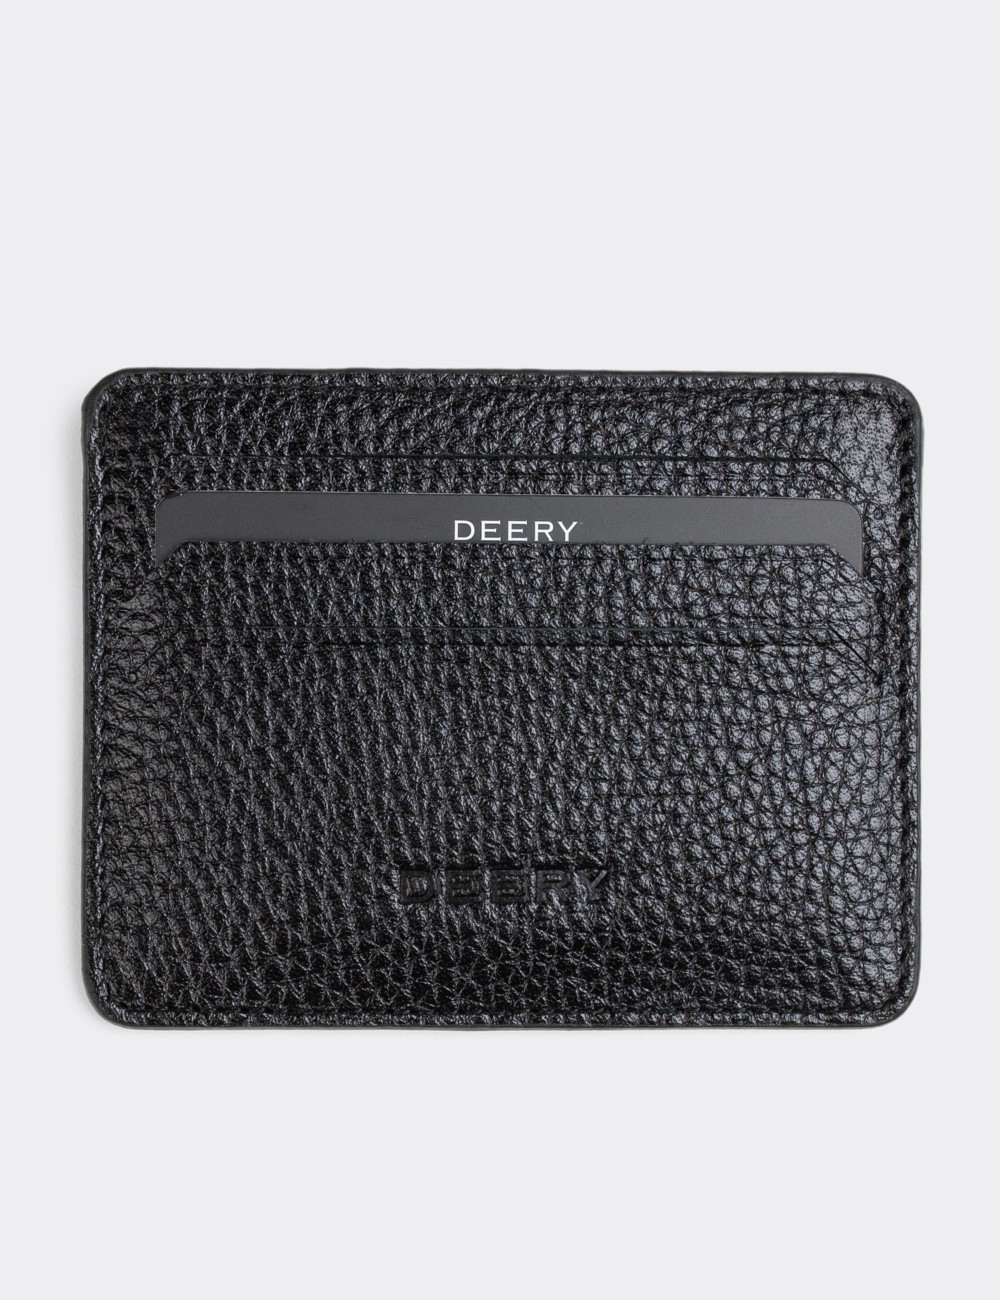  Leather Black Men's Wallet - 00530MSYHZ01